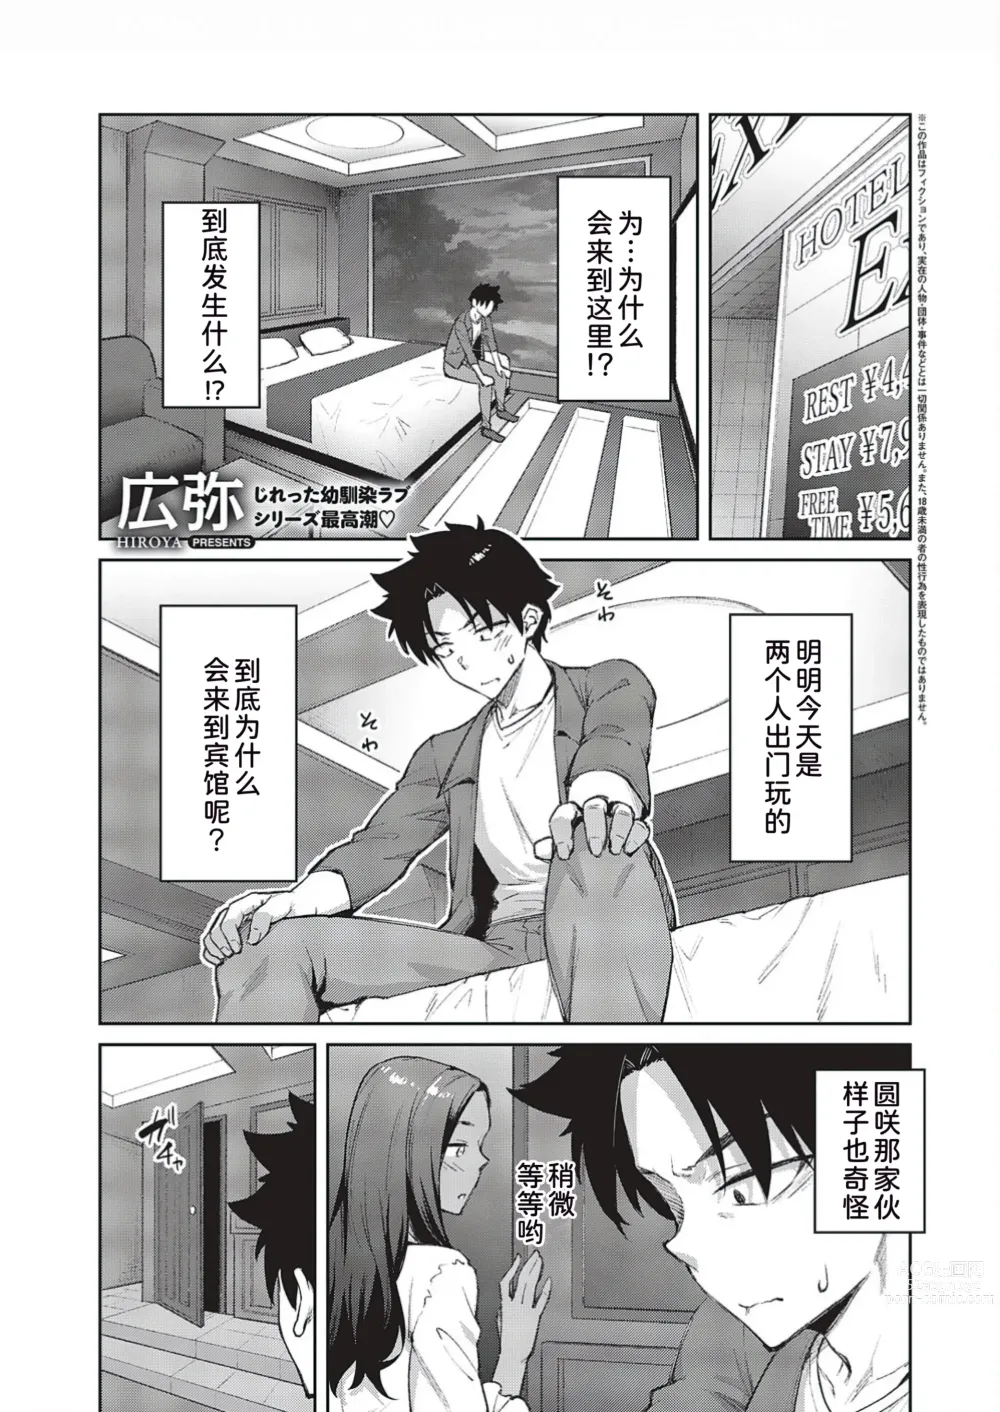 Page 2 of manga Tachiaoi 3